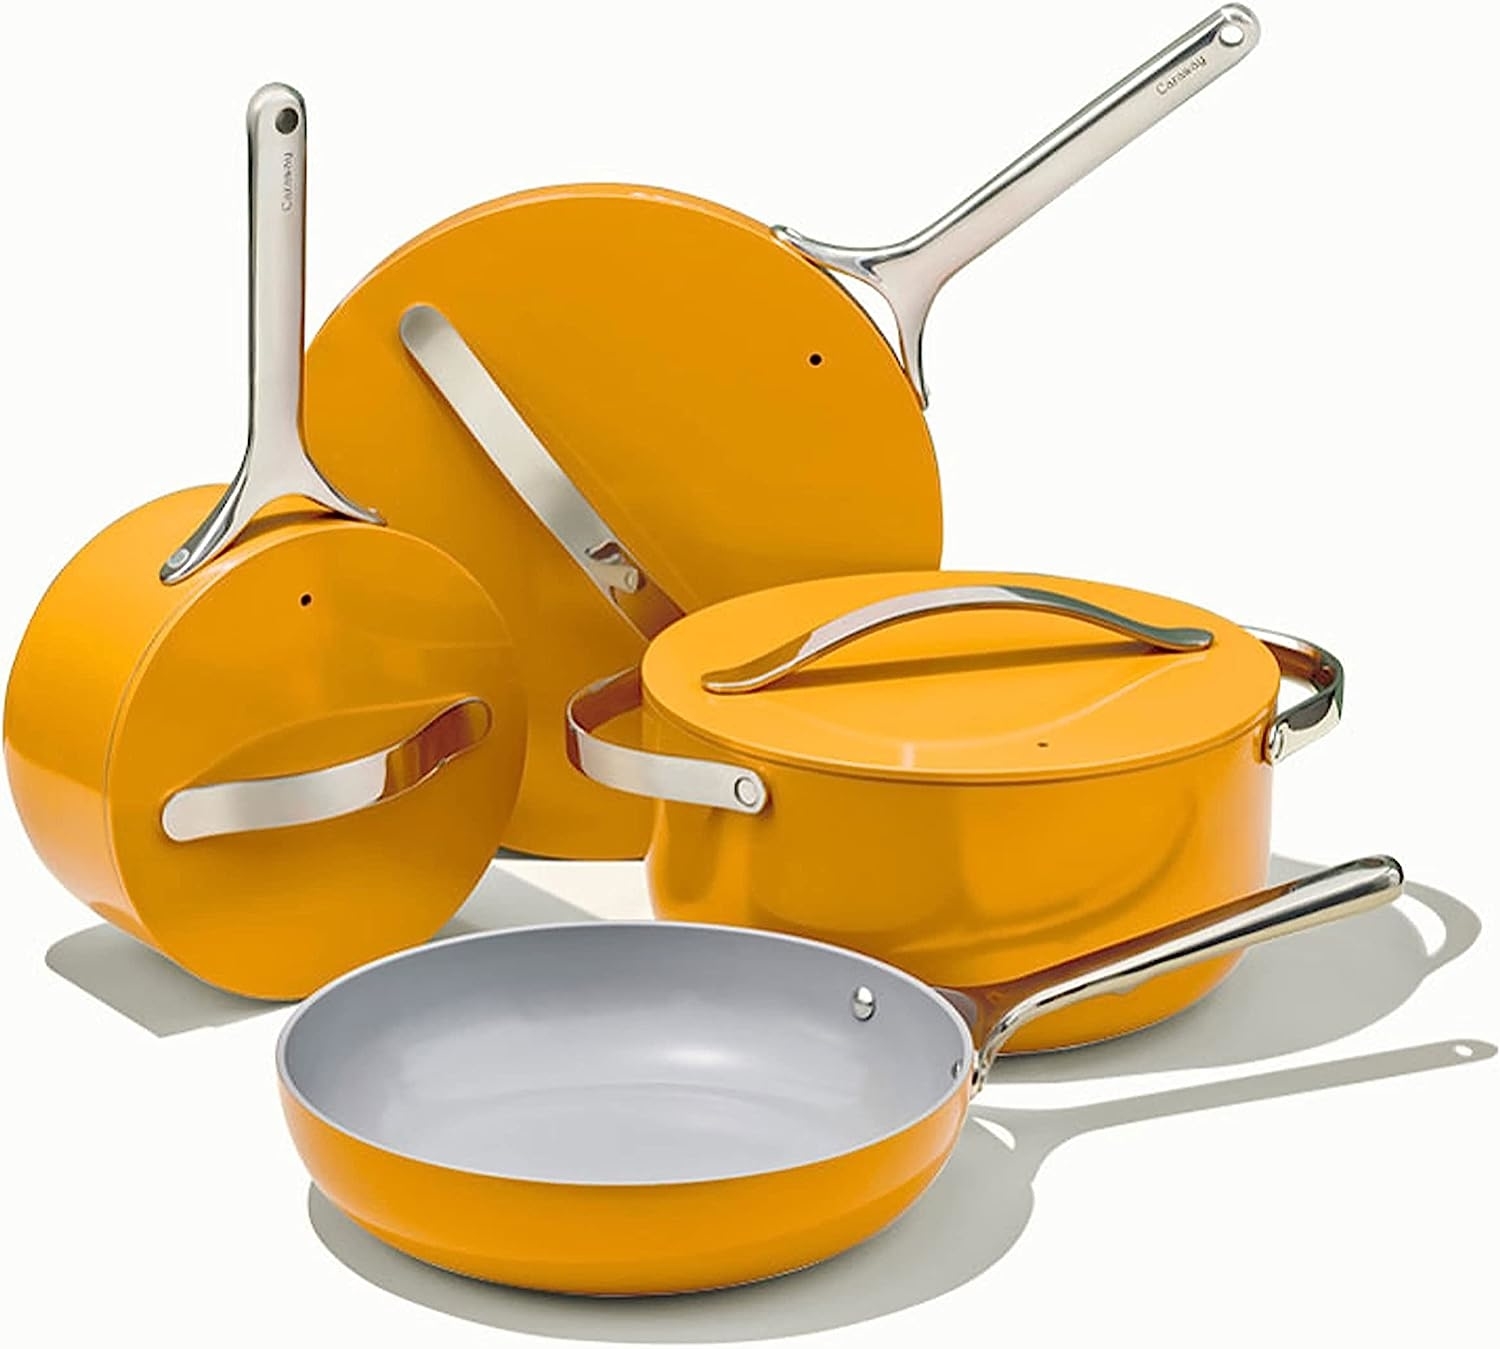 the marigold pan set